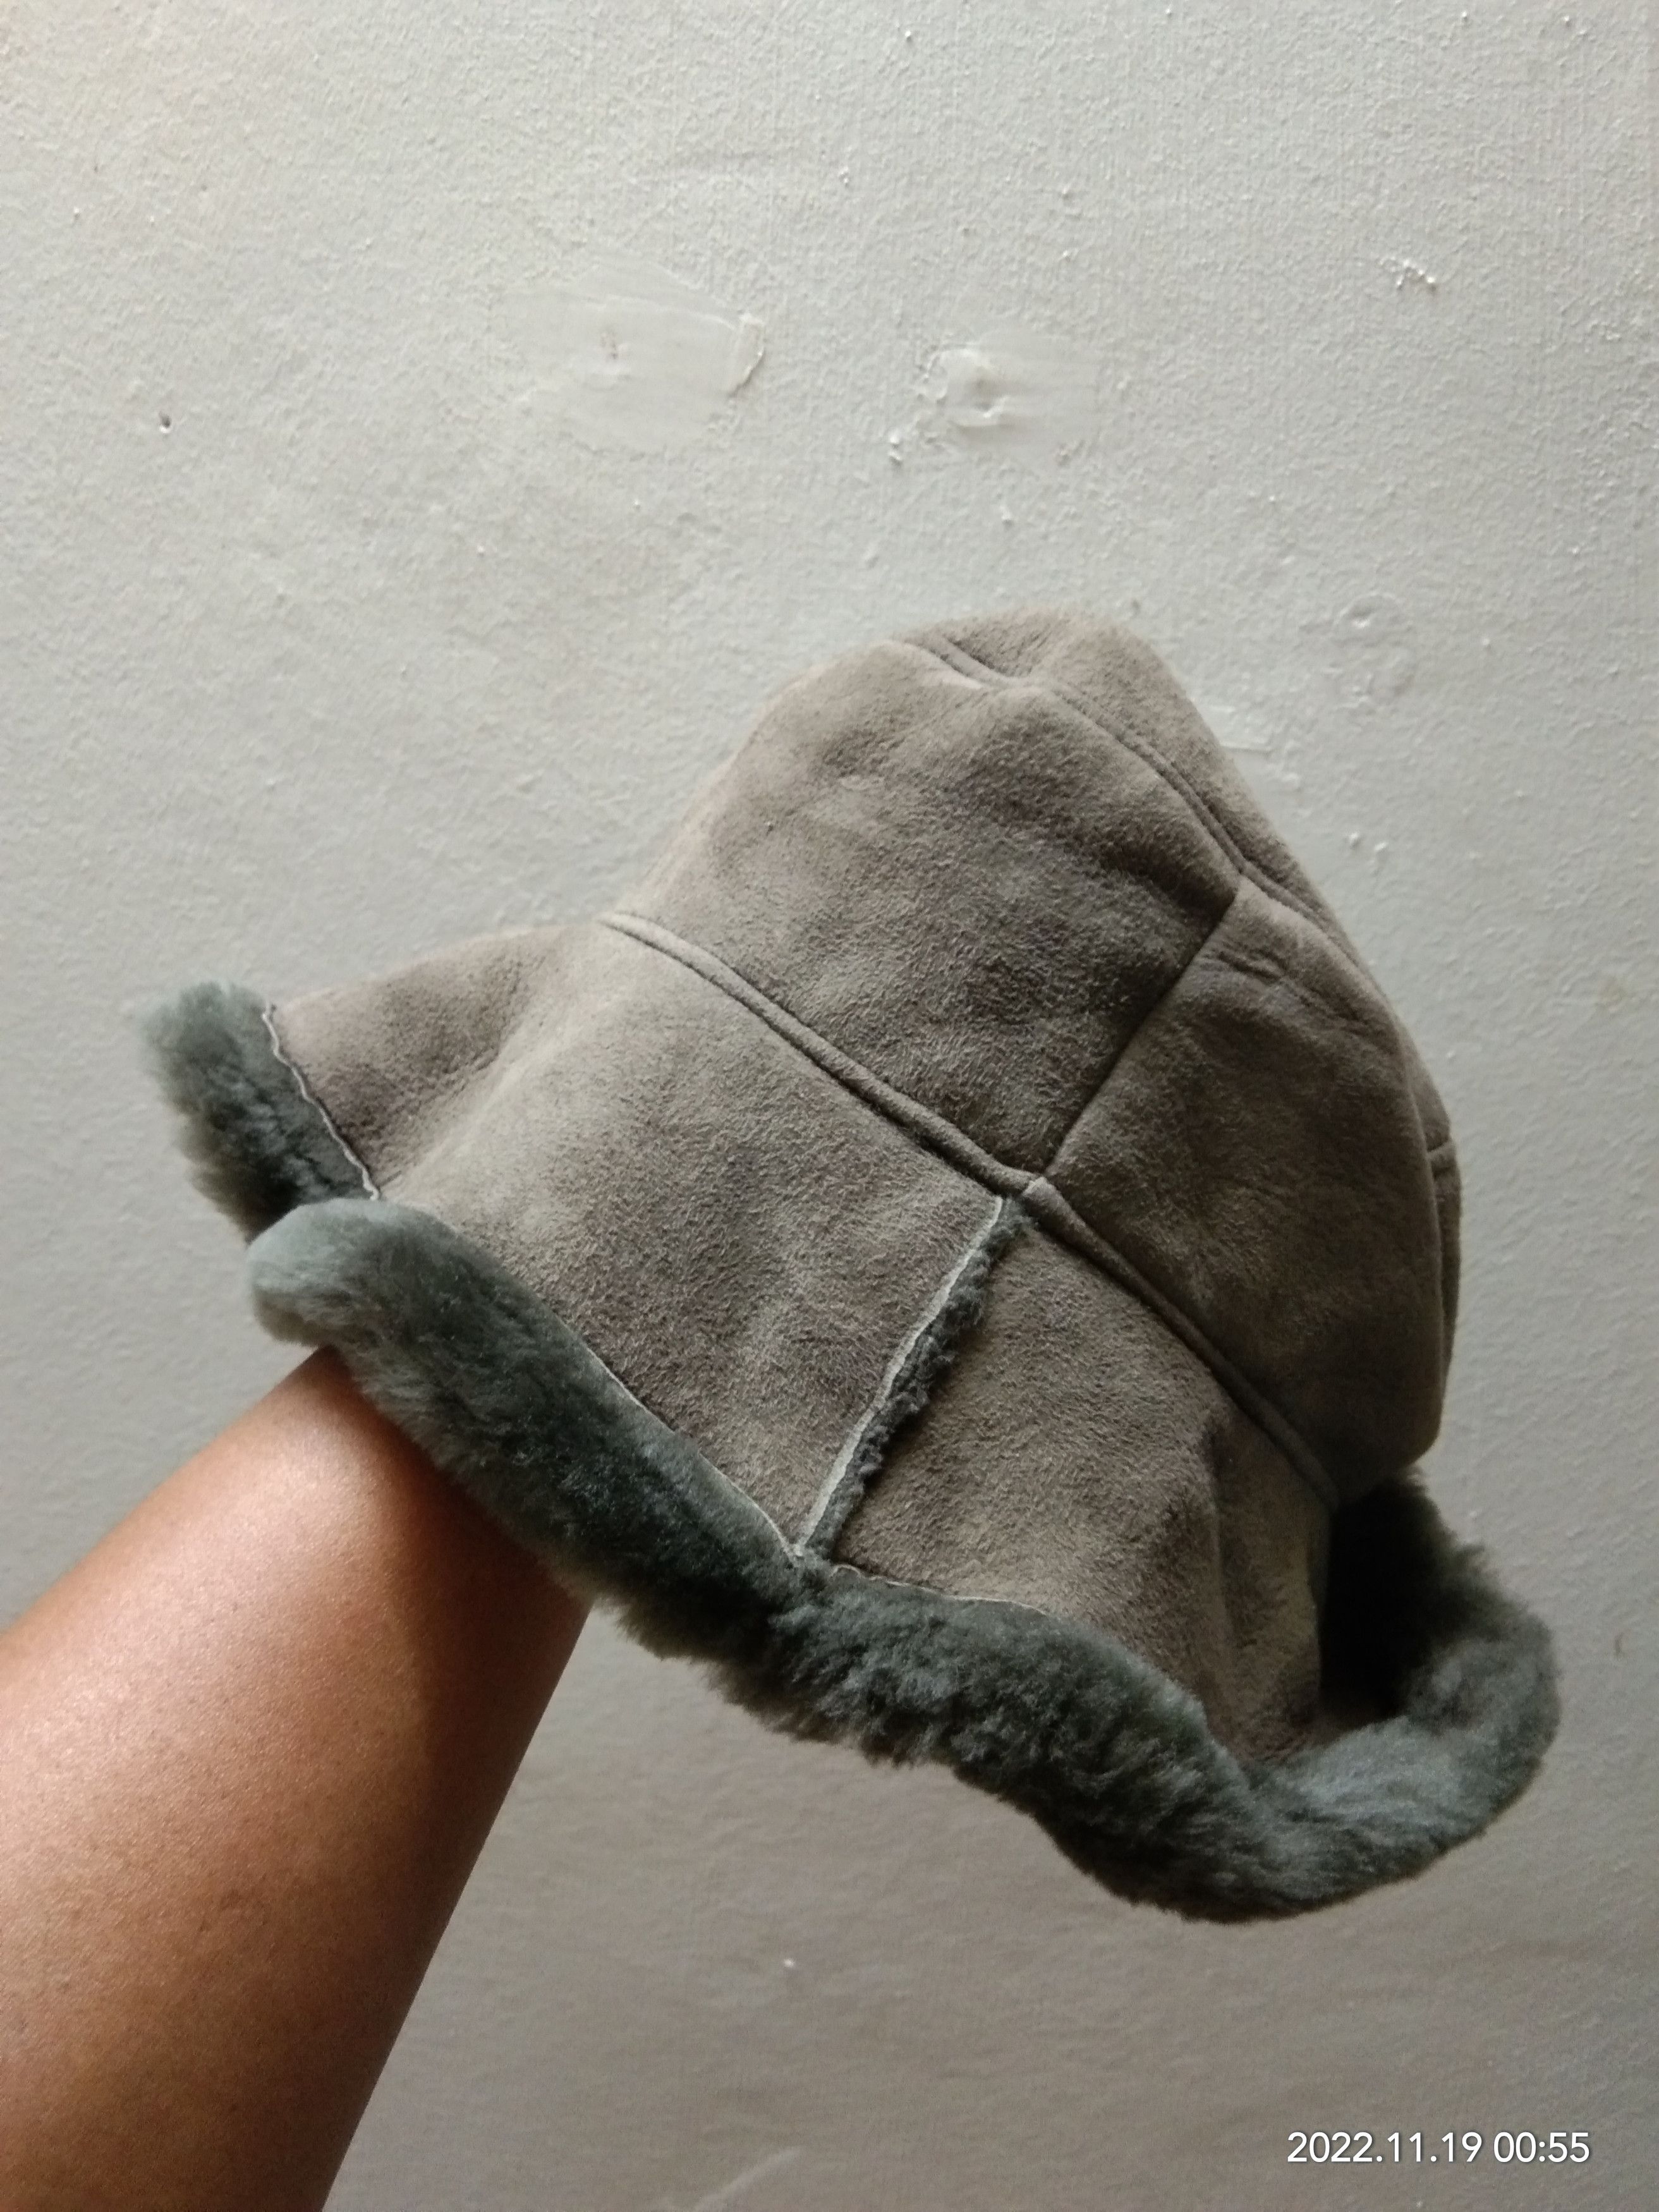 Leather - OWEN BARRY SHEEPSKIN HAT - 2